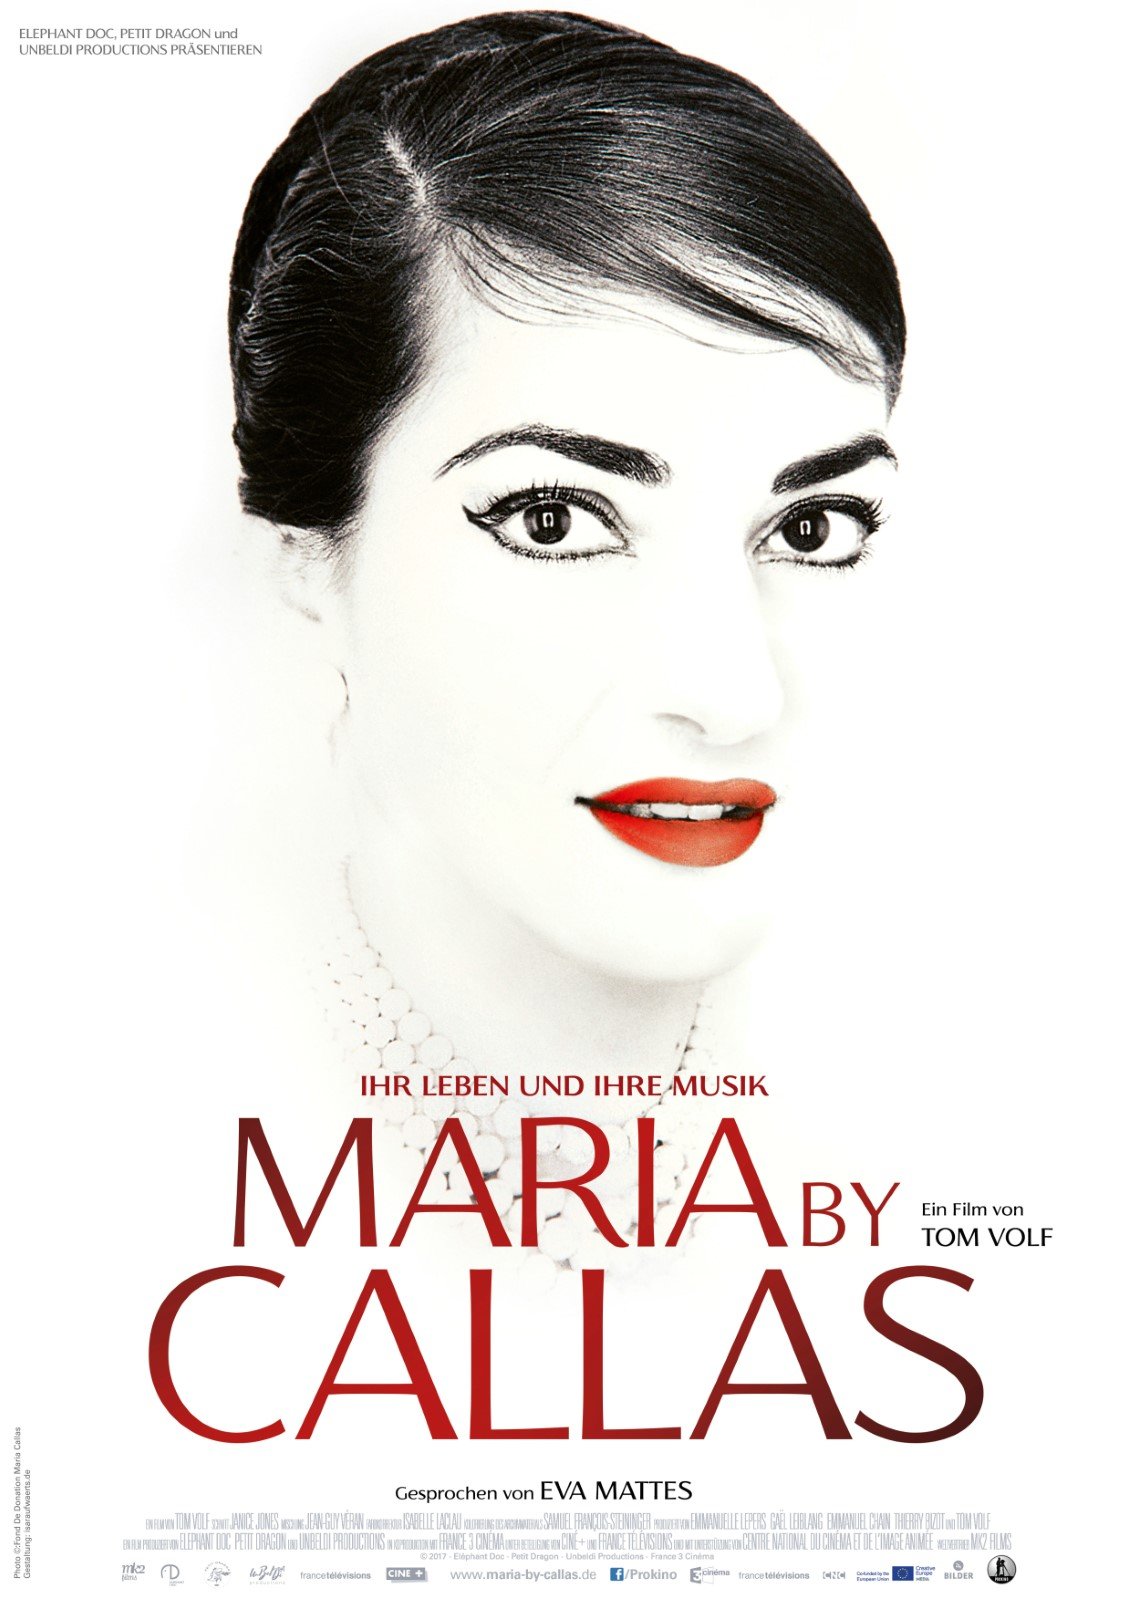 Anschauen Maria by Callas film in Deutsch mit Untertiteln in FULL HD